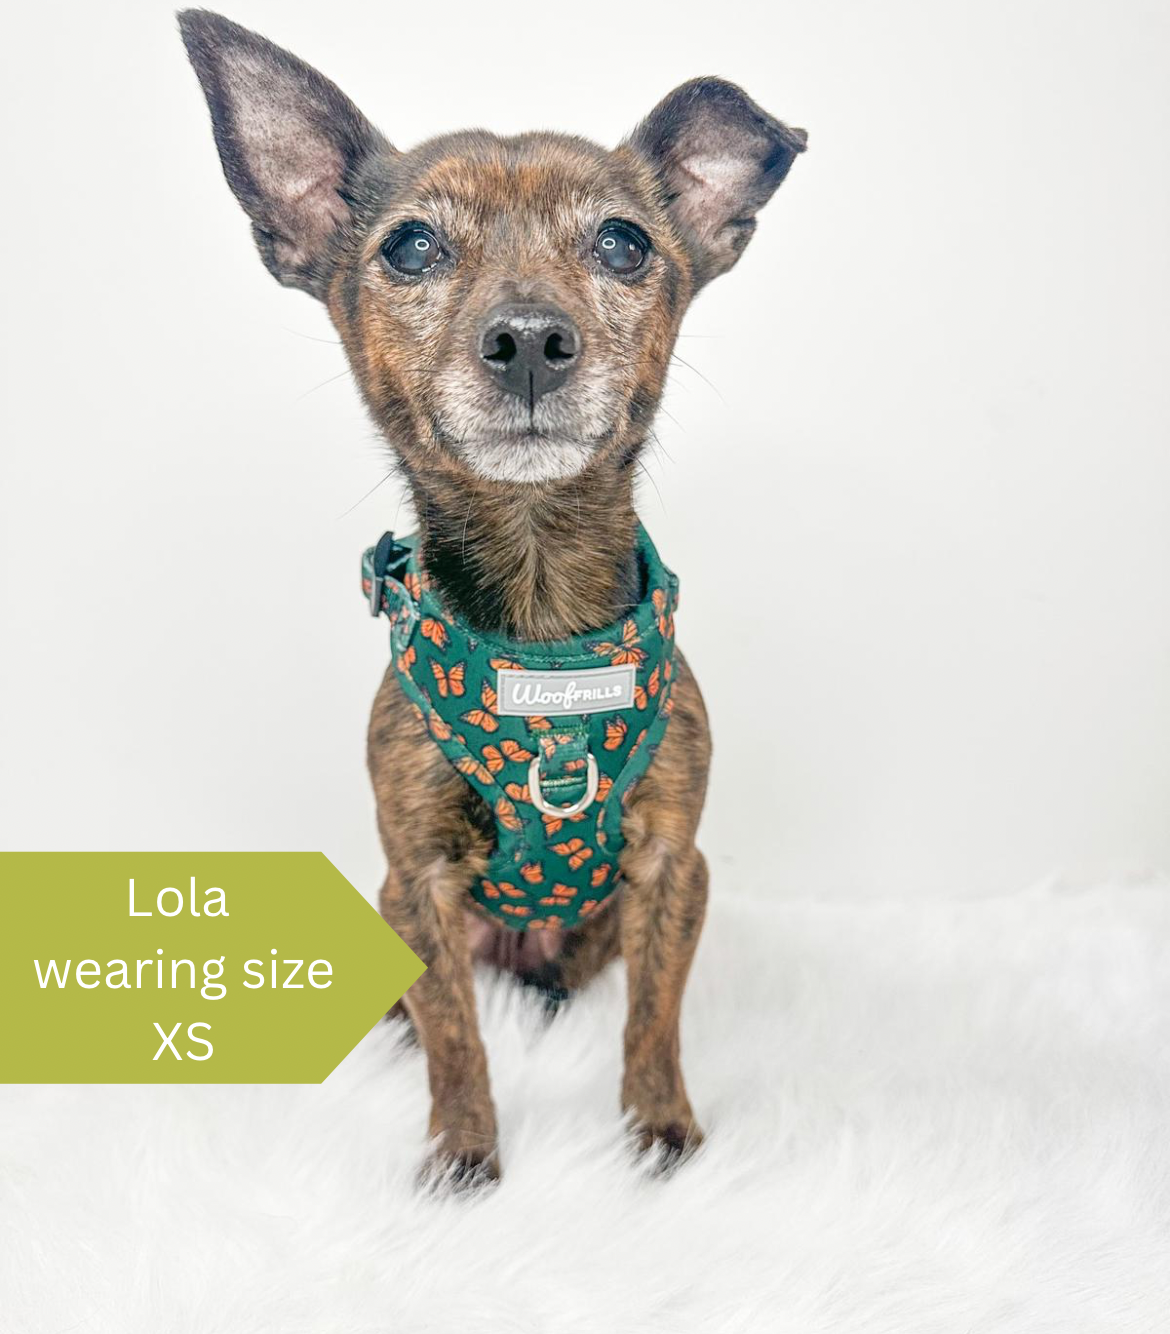 Lola wearing a xs dog harness